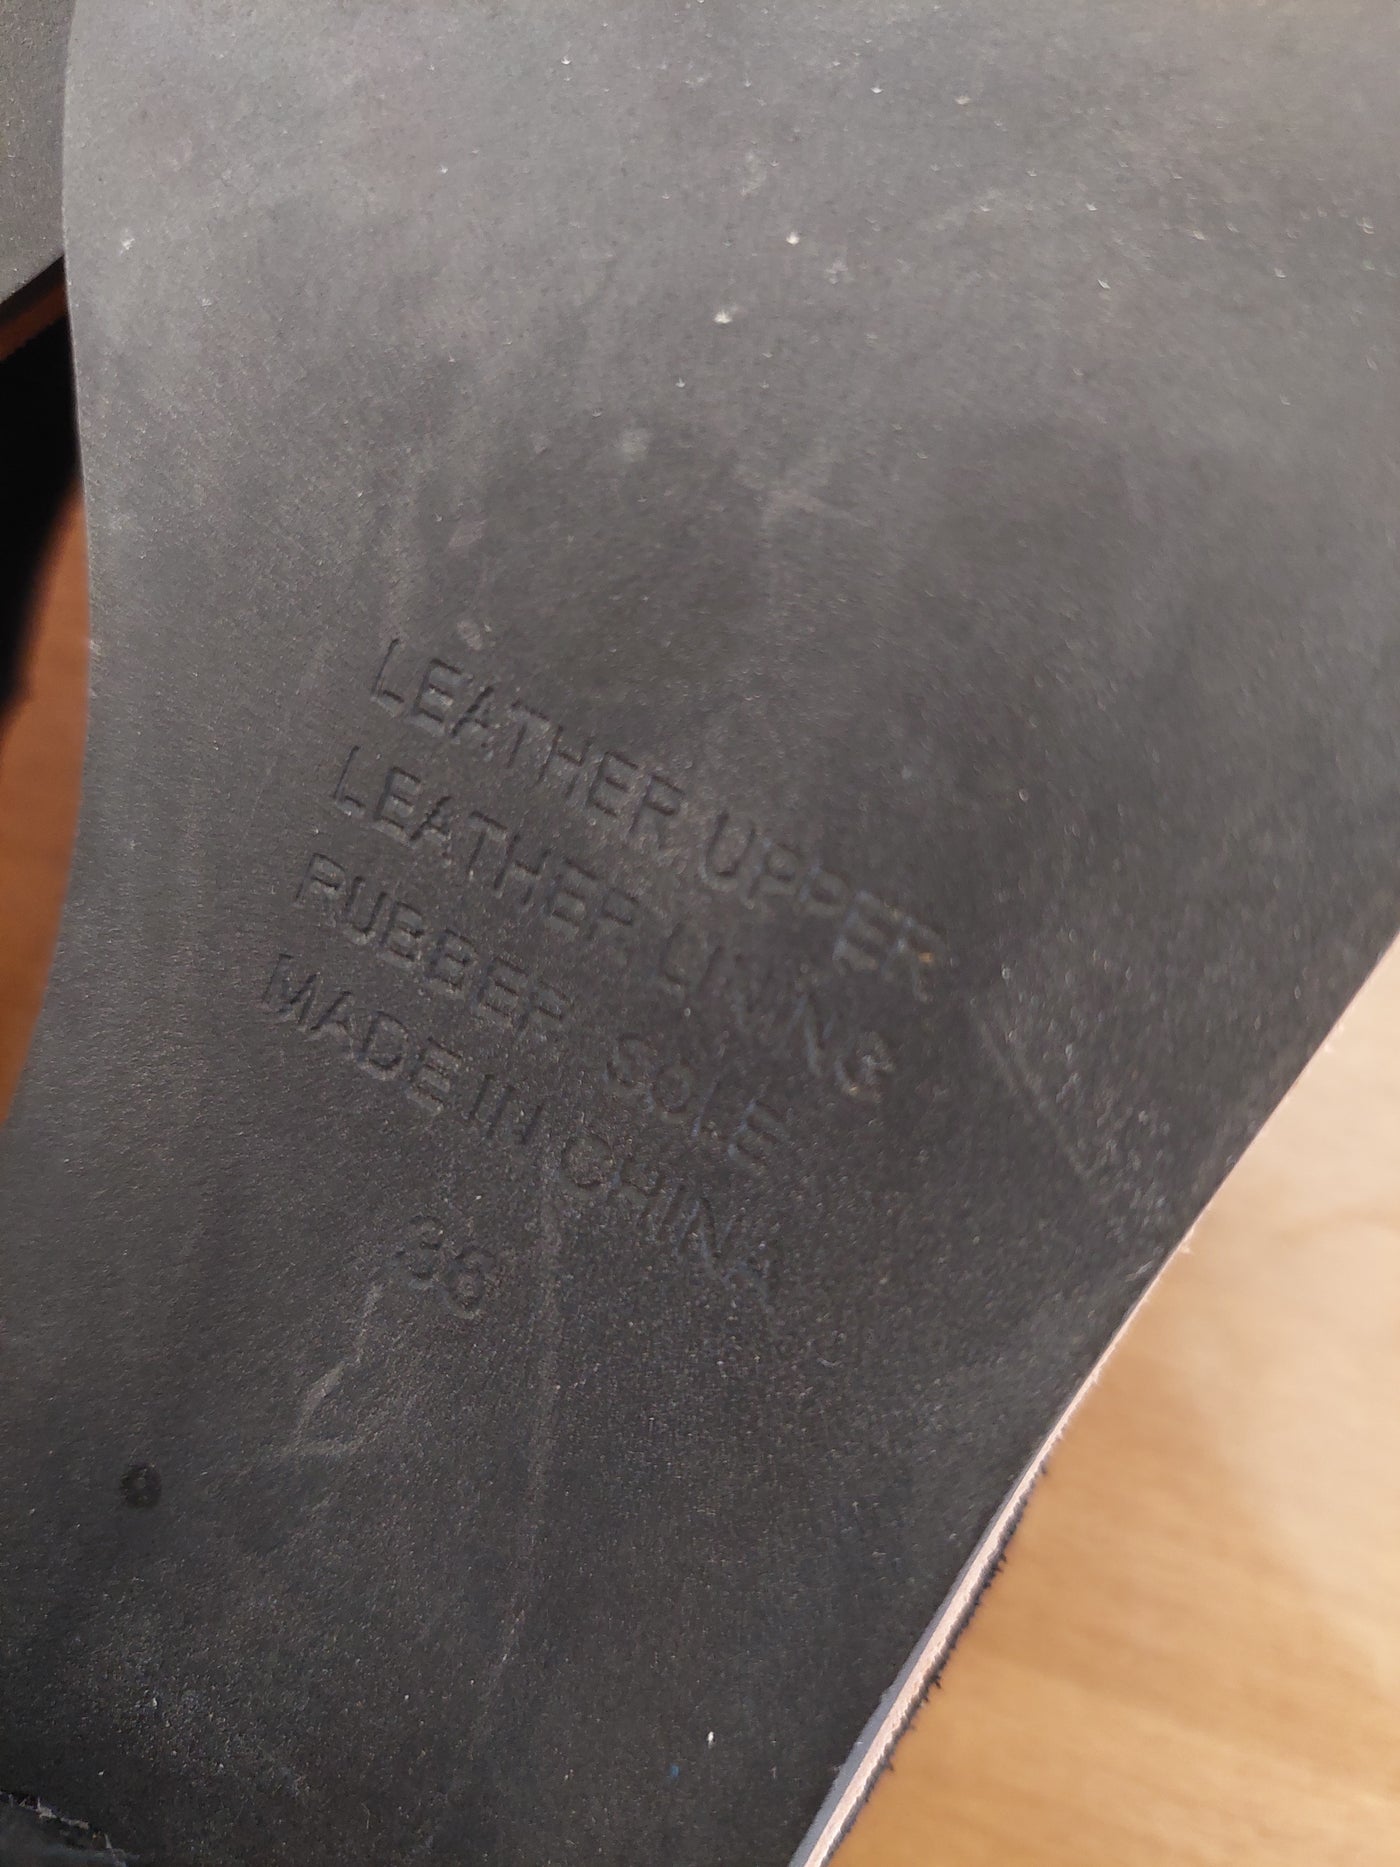 Gorman 'KALOCSAI' Black Suede Leather Heel, Size EU 36 / AU 5